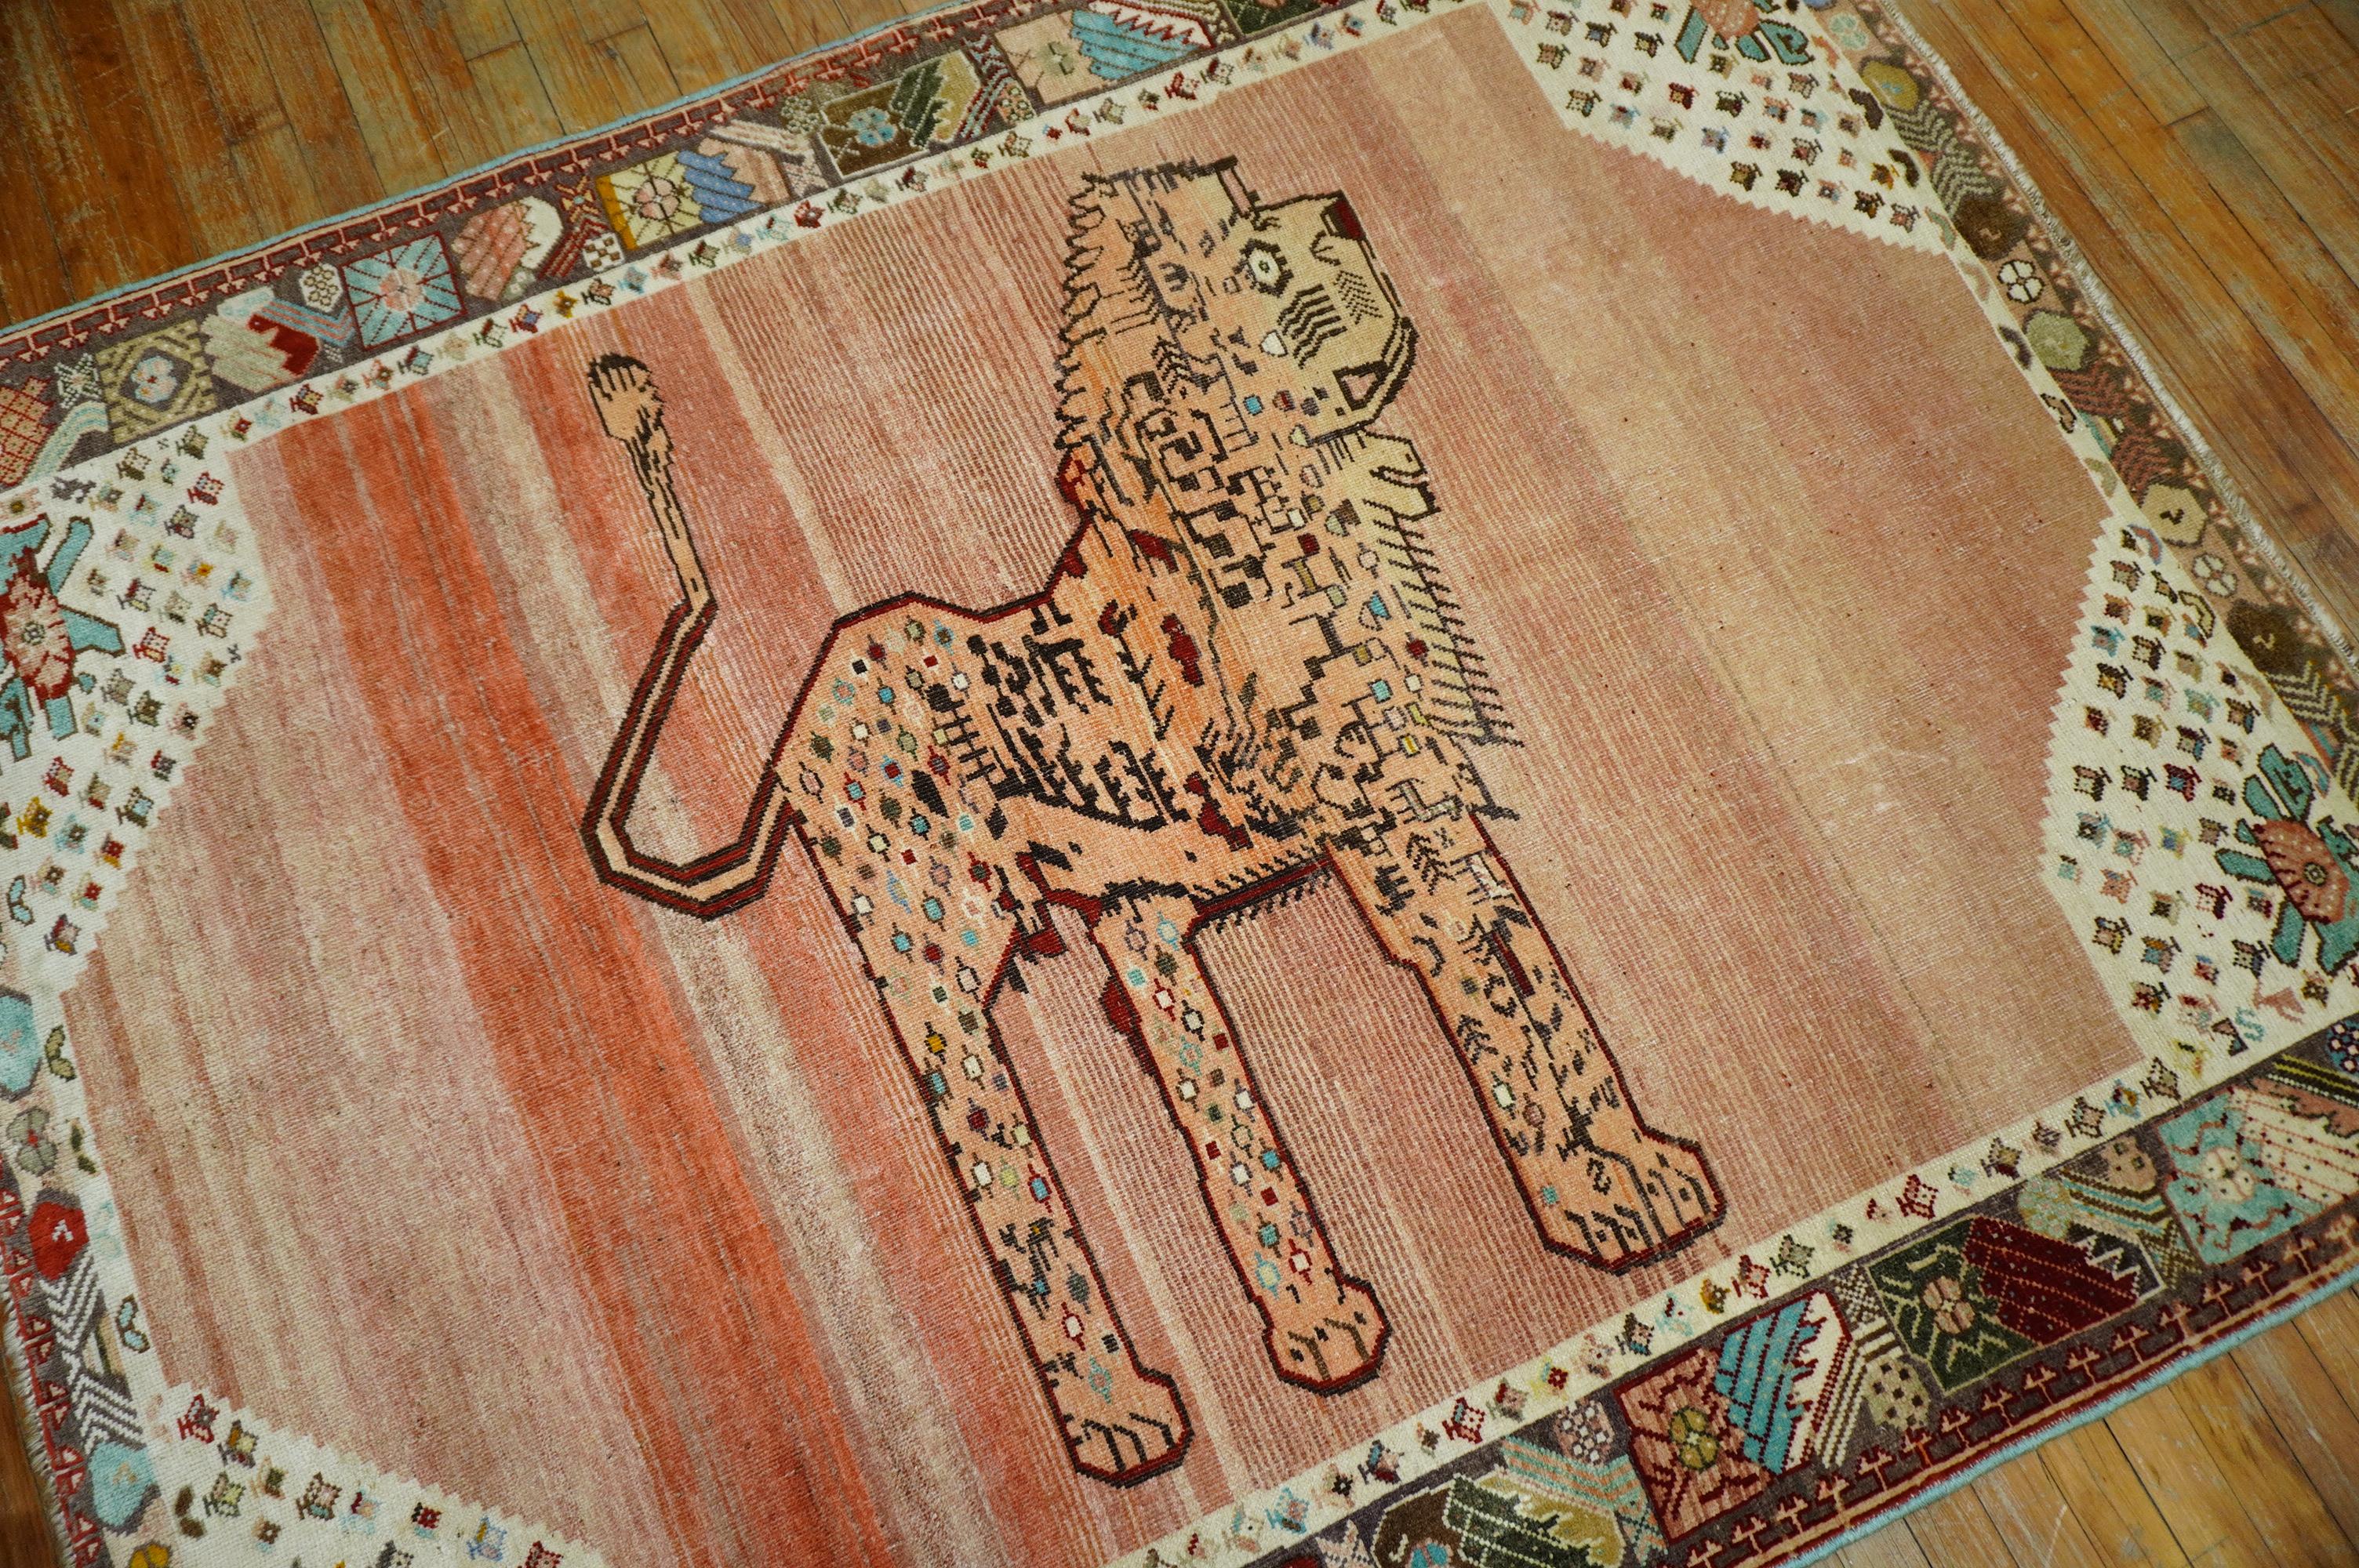 tapis persan du 3ème quart du 20ème siècle avec un lion isolé sur un fond abrasif solide de couleur pêche. La bordure est également magnifique car elle comporte des touches de turquoise

Mesures : 5'1'' x 6'5''.